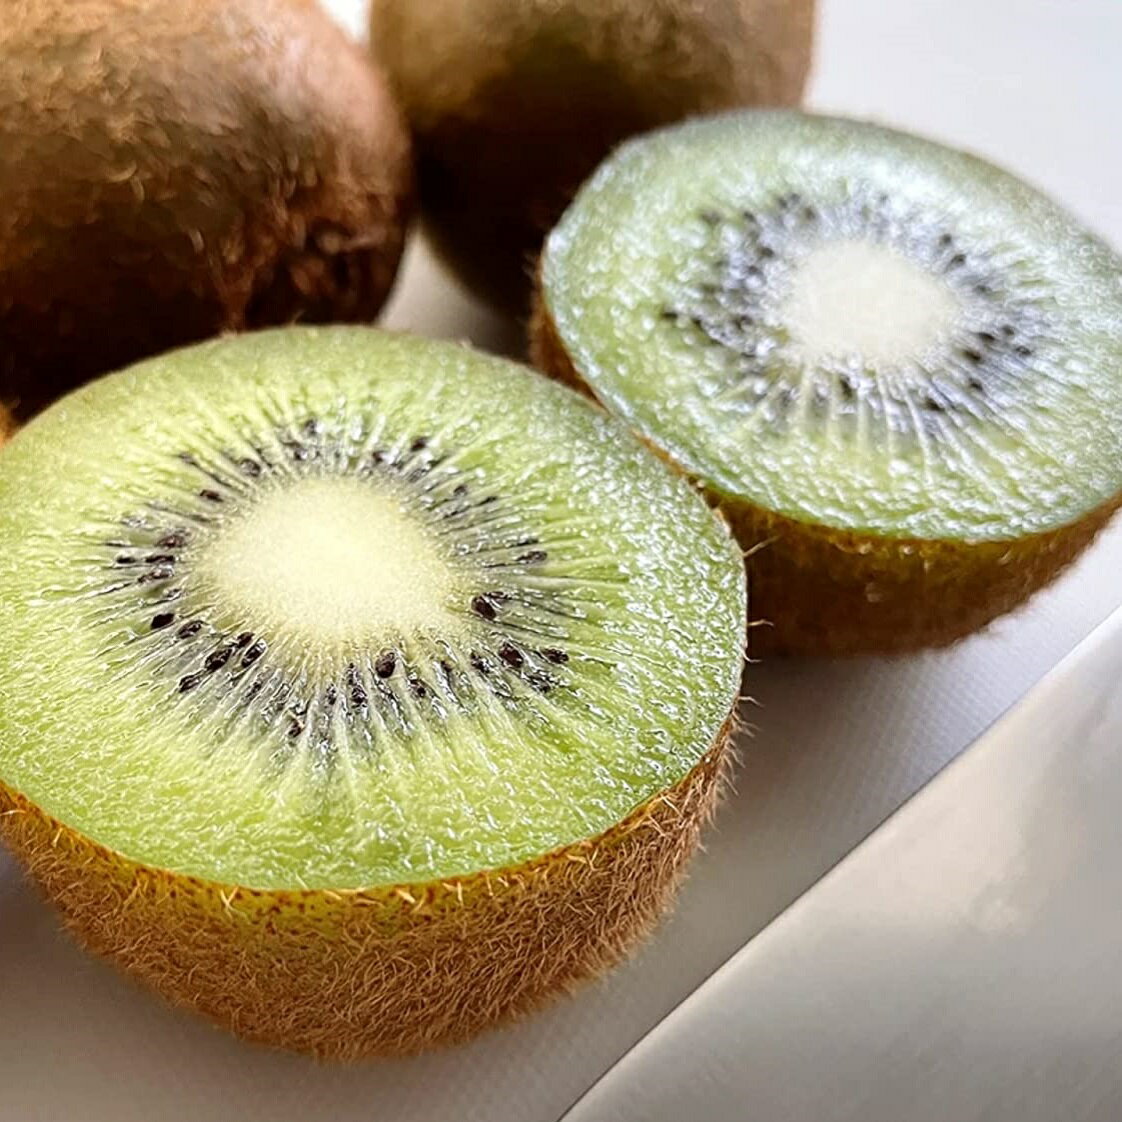 [送料無料][あす楽] 美味いとこどり グリーン キウイ 約2kg ニュージーランド 完熟 フルーツマイスターが選別